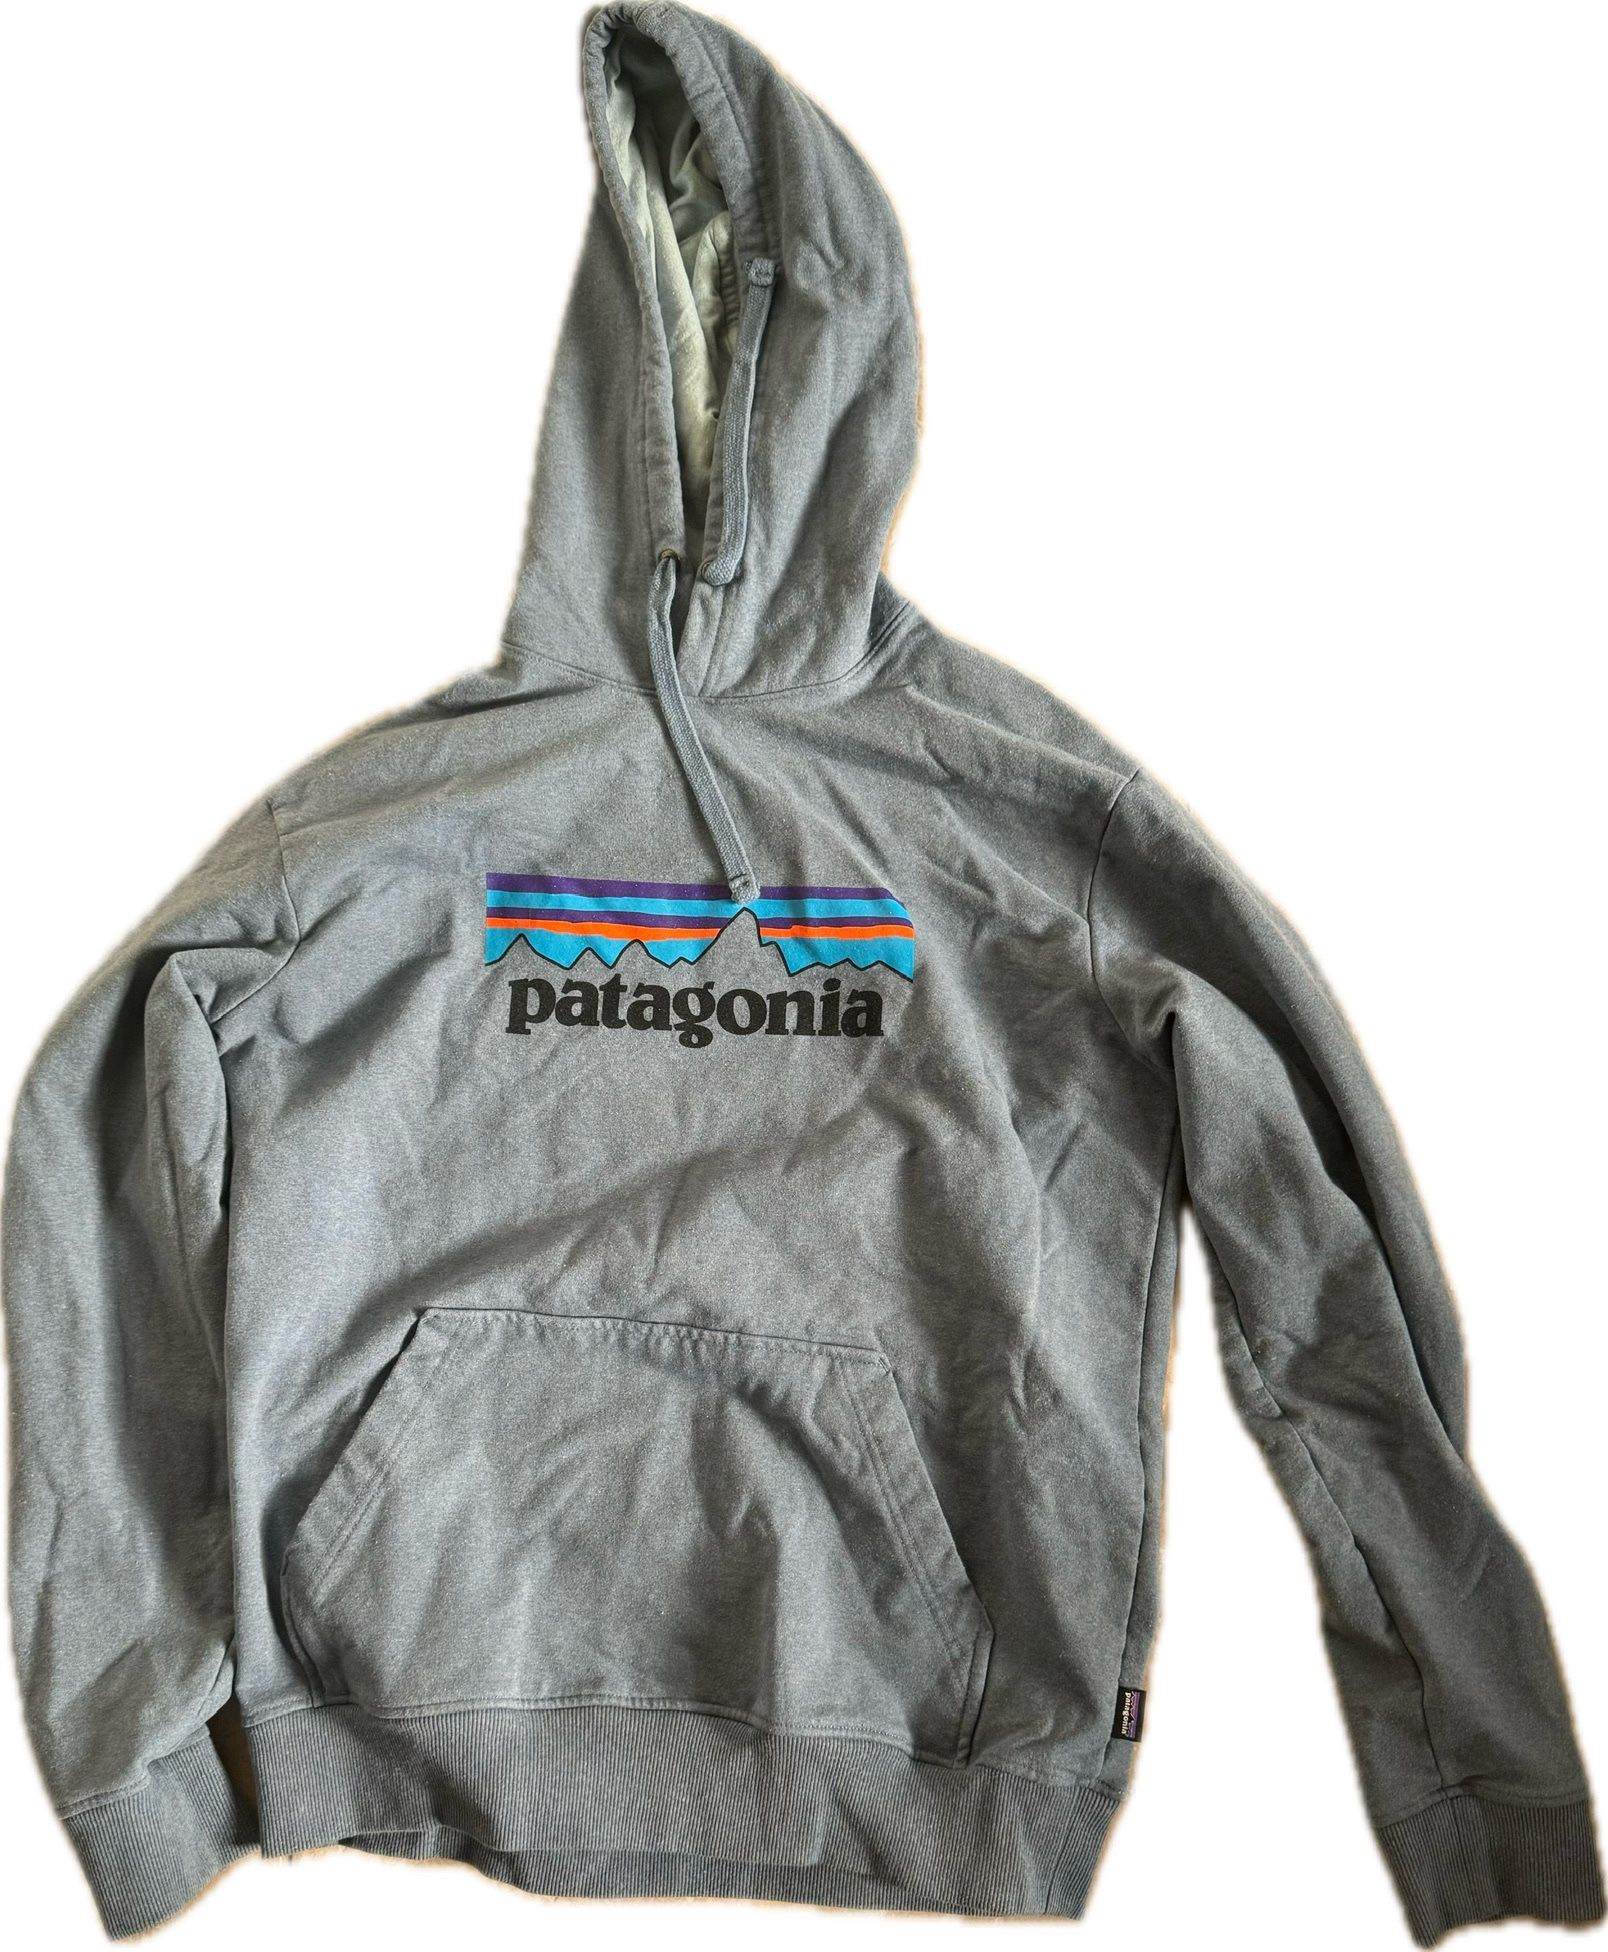 Patagonia Hoodie